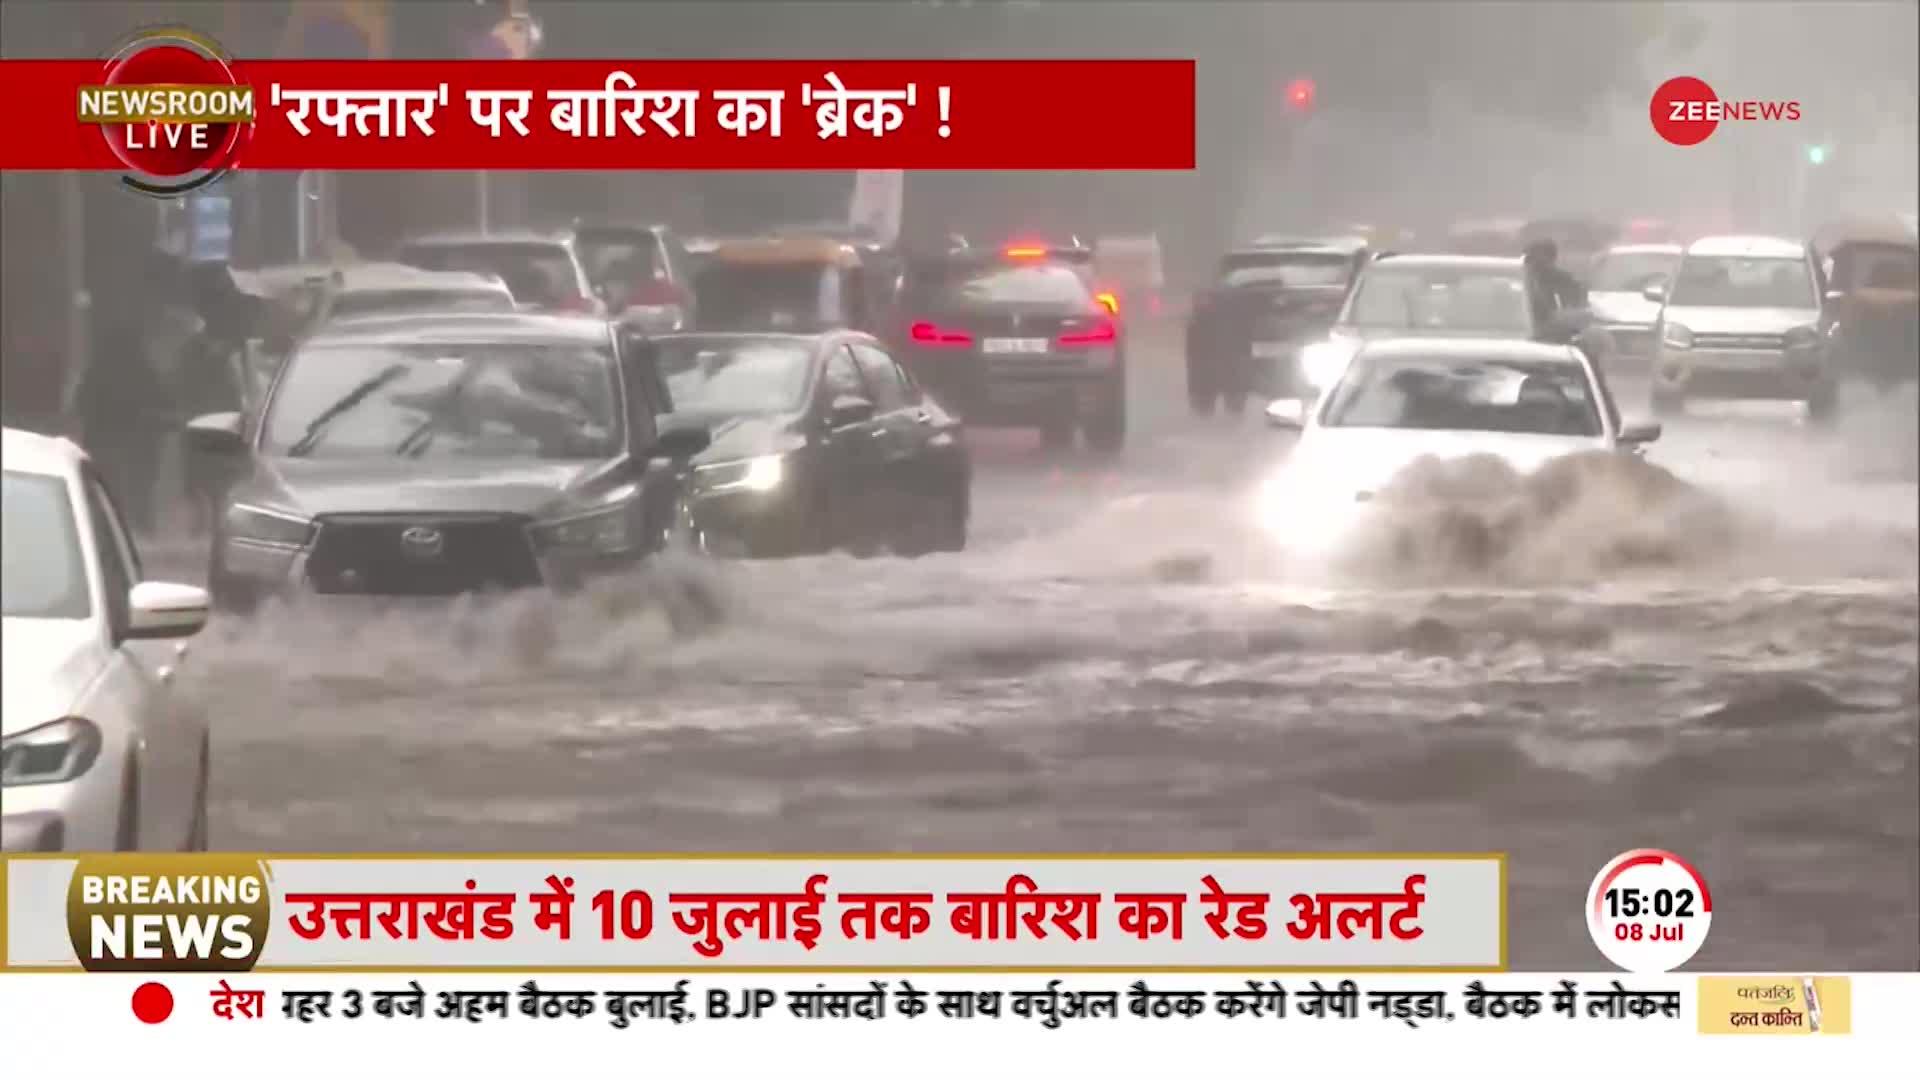 Delhi weather alert: Delhi-NCR में बारिश का येलो अलर्ट जारी, दिल्ली में बारिश ने बढ़ाई मुसीबत